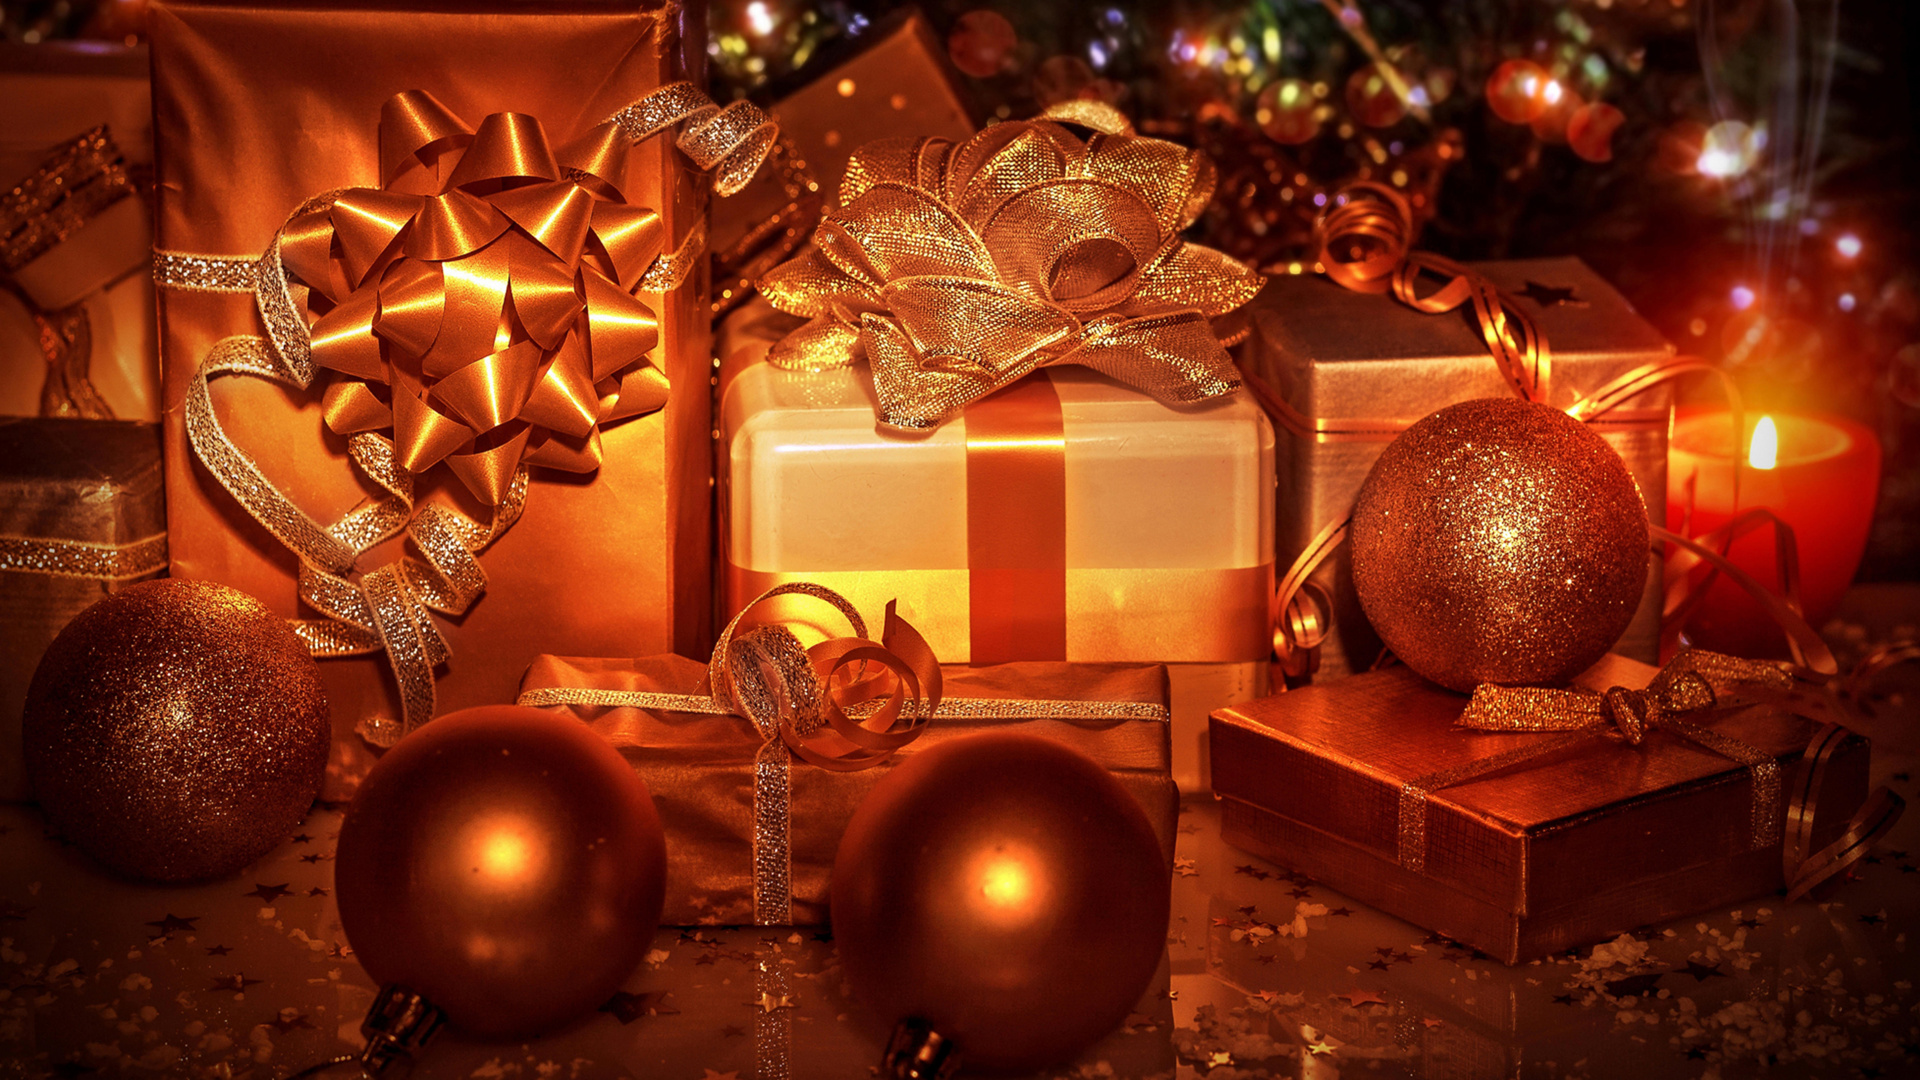 圣诞节那天, 圣诞节的装饰品, 圣诞树, 圣诞节礼物, 假日 壁纸 1920x1080 允许